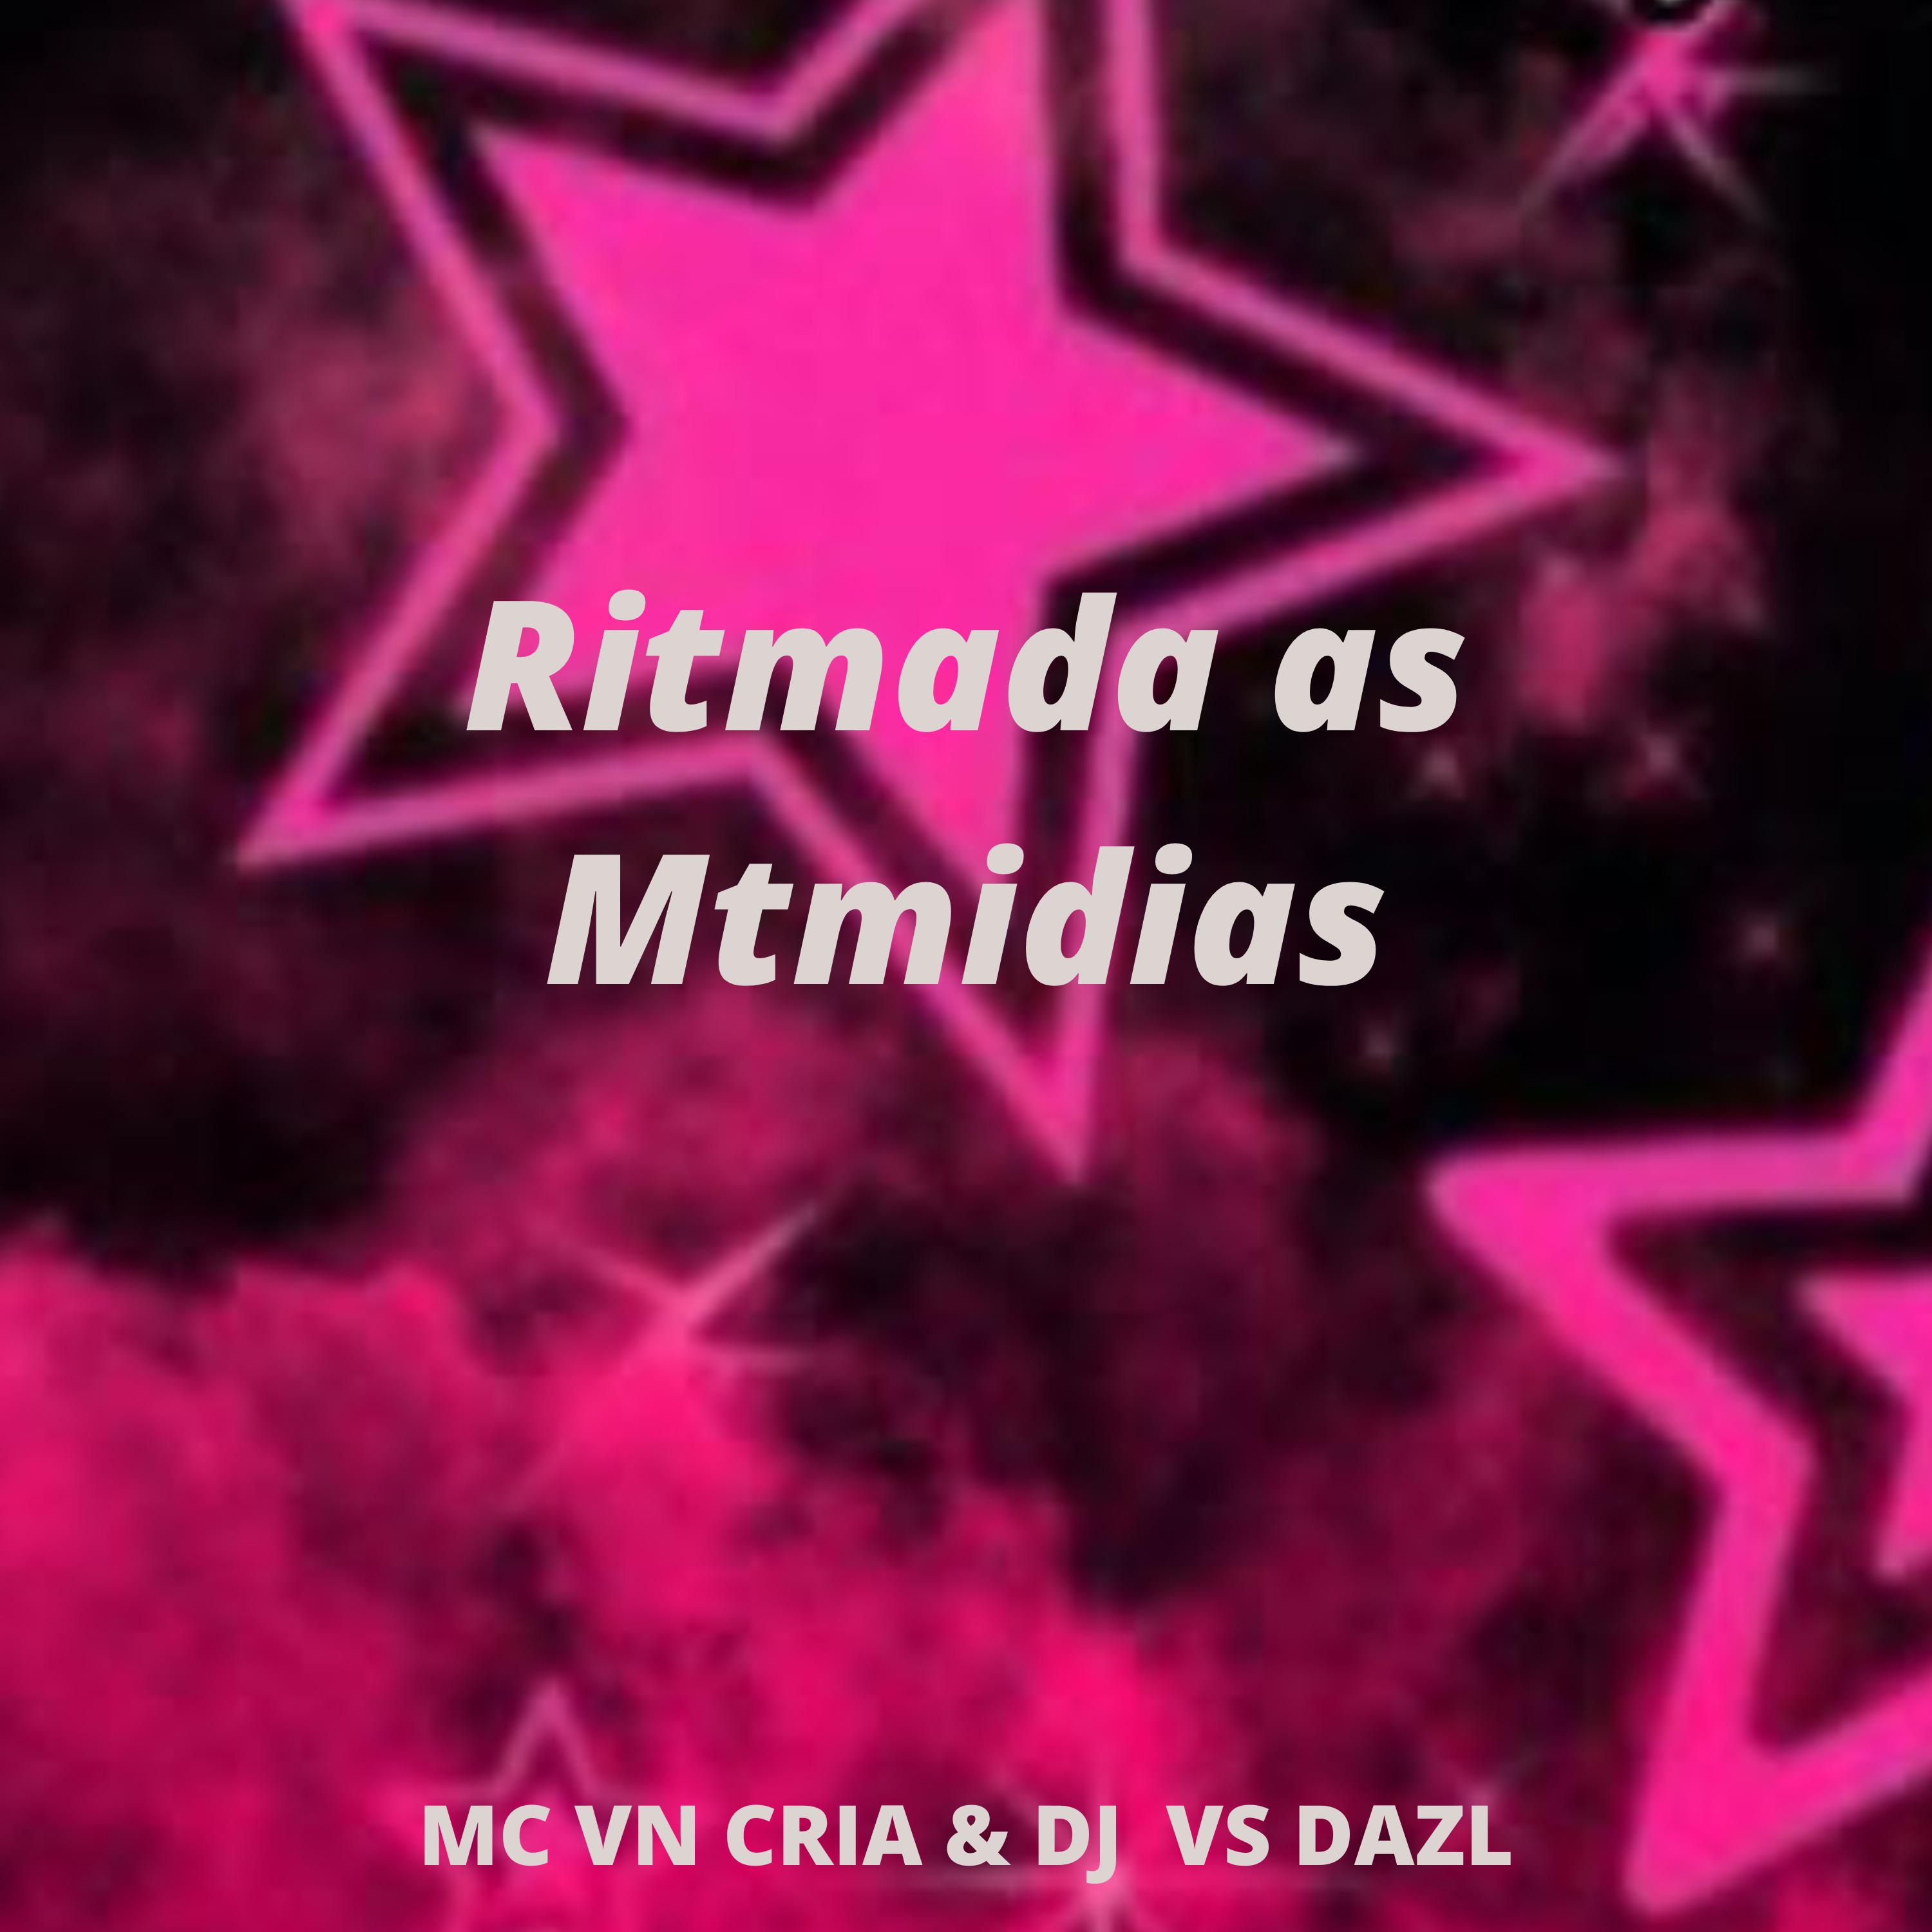 DJ VS DA ZL - Ritmada as Mtmidias